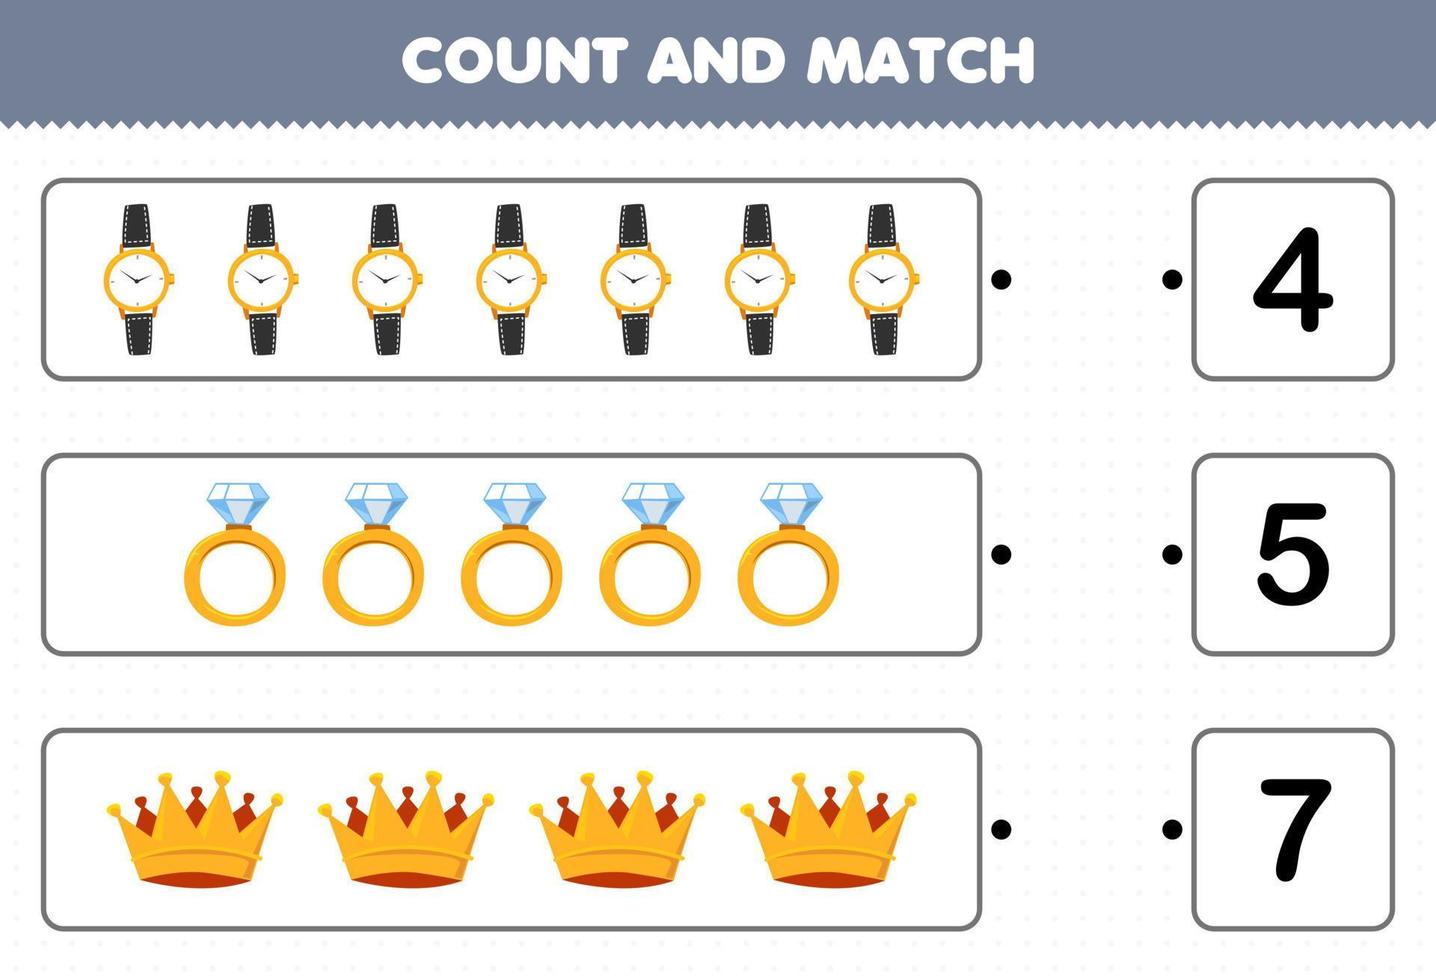 jeu éducatif pour les enfants compter et correspondre compter le nombre de dessin animé bijoux portables montre anneau couronne et match avec les bons numéros feuille de calcul imprimable vecteur